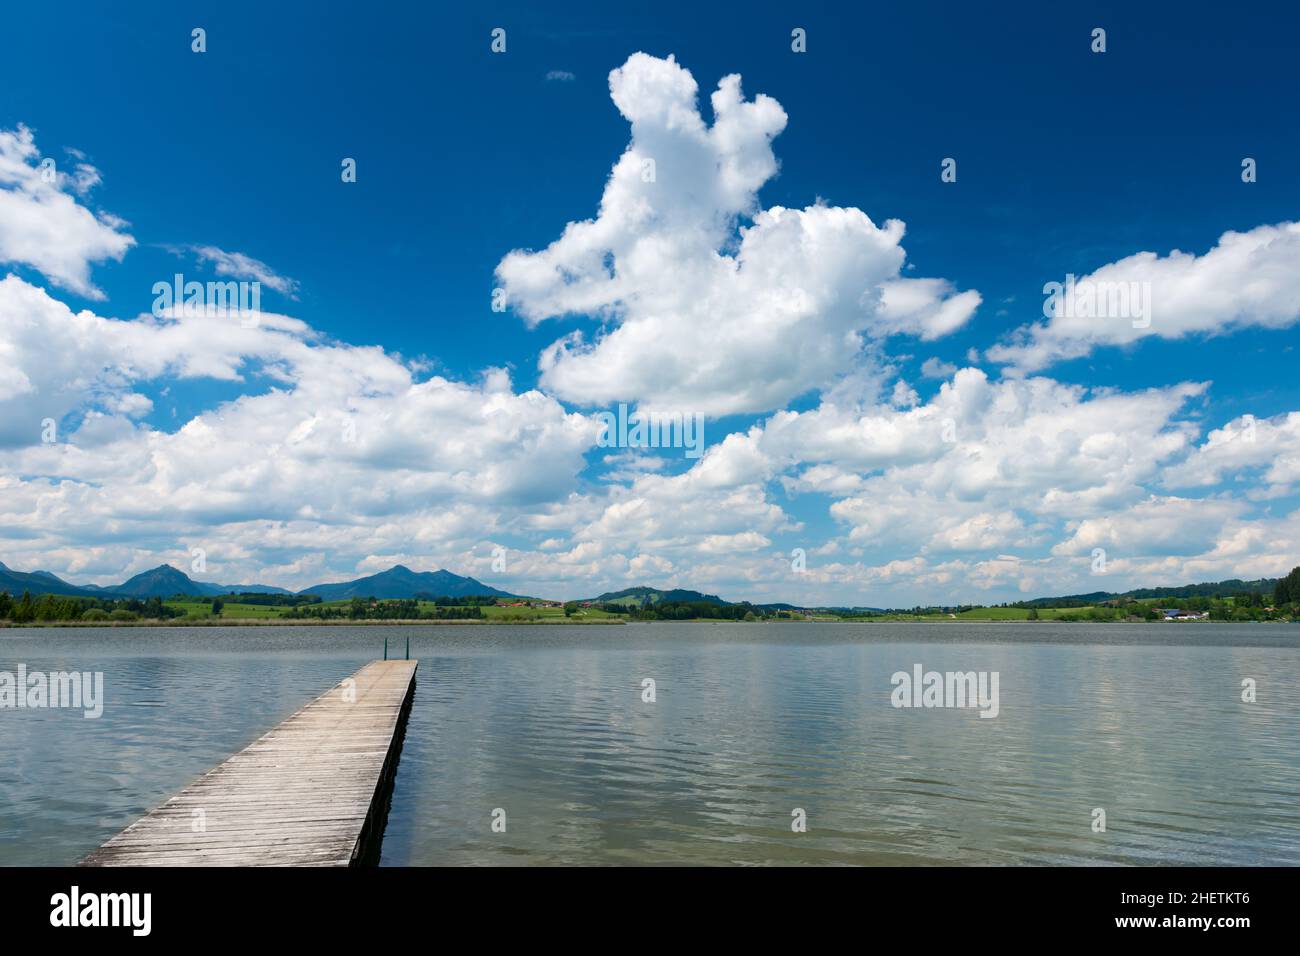 passerella in legno sul lago hopfen am see con cielo blu e nuvole Foto Stock